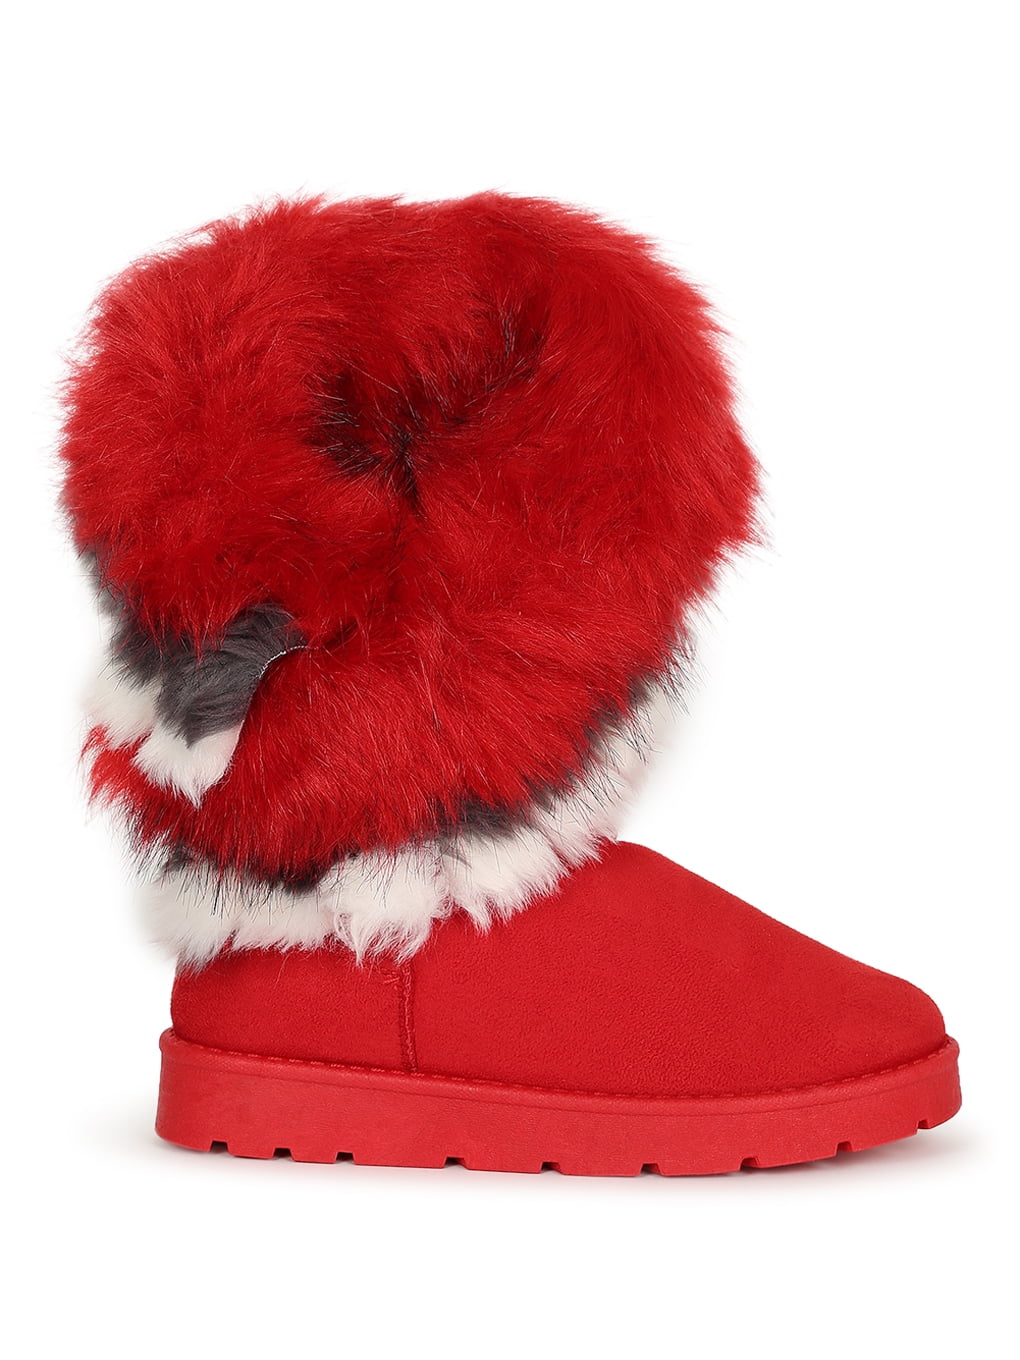 Women Low Flat Heel Faux Fur Suede Slip On Winter Furry Shearling Boots NEW 